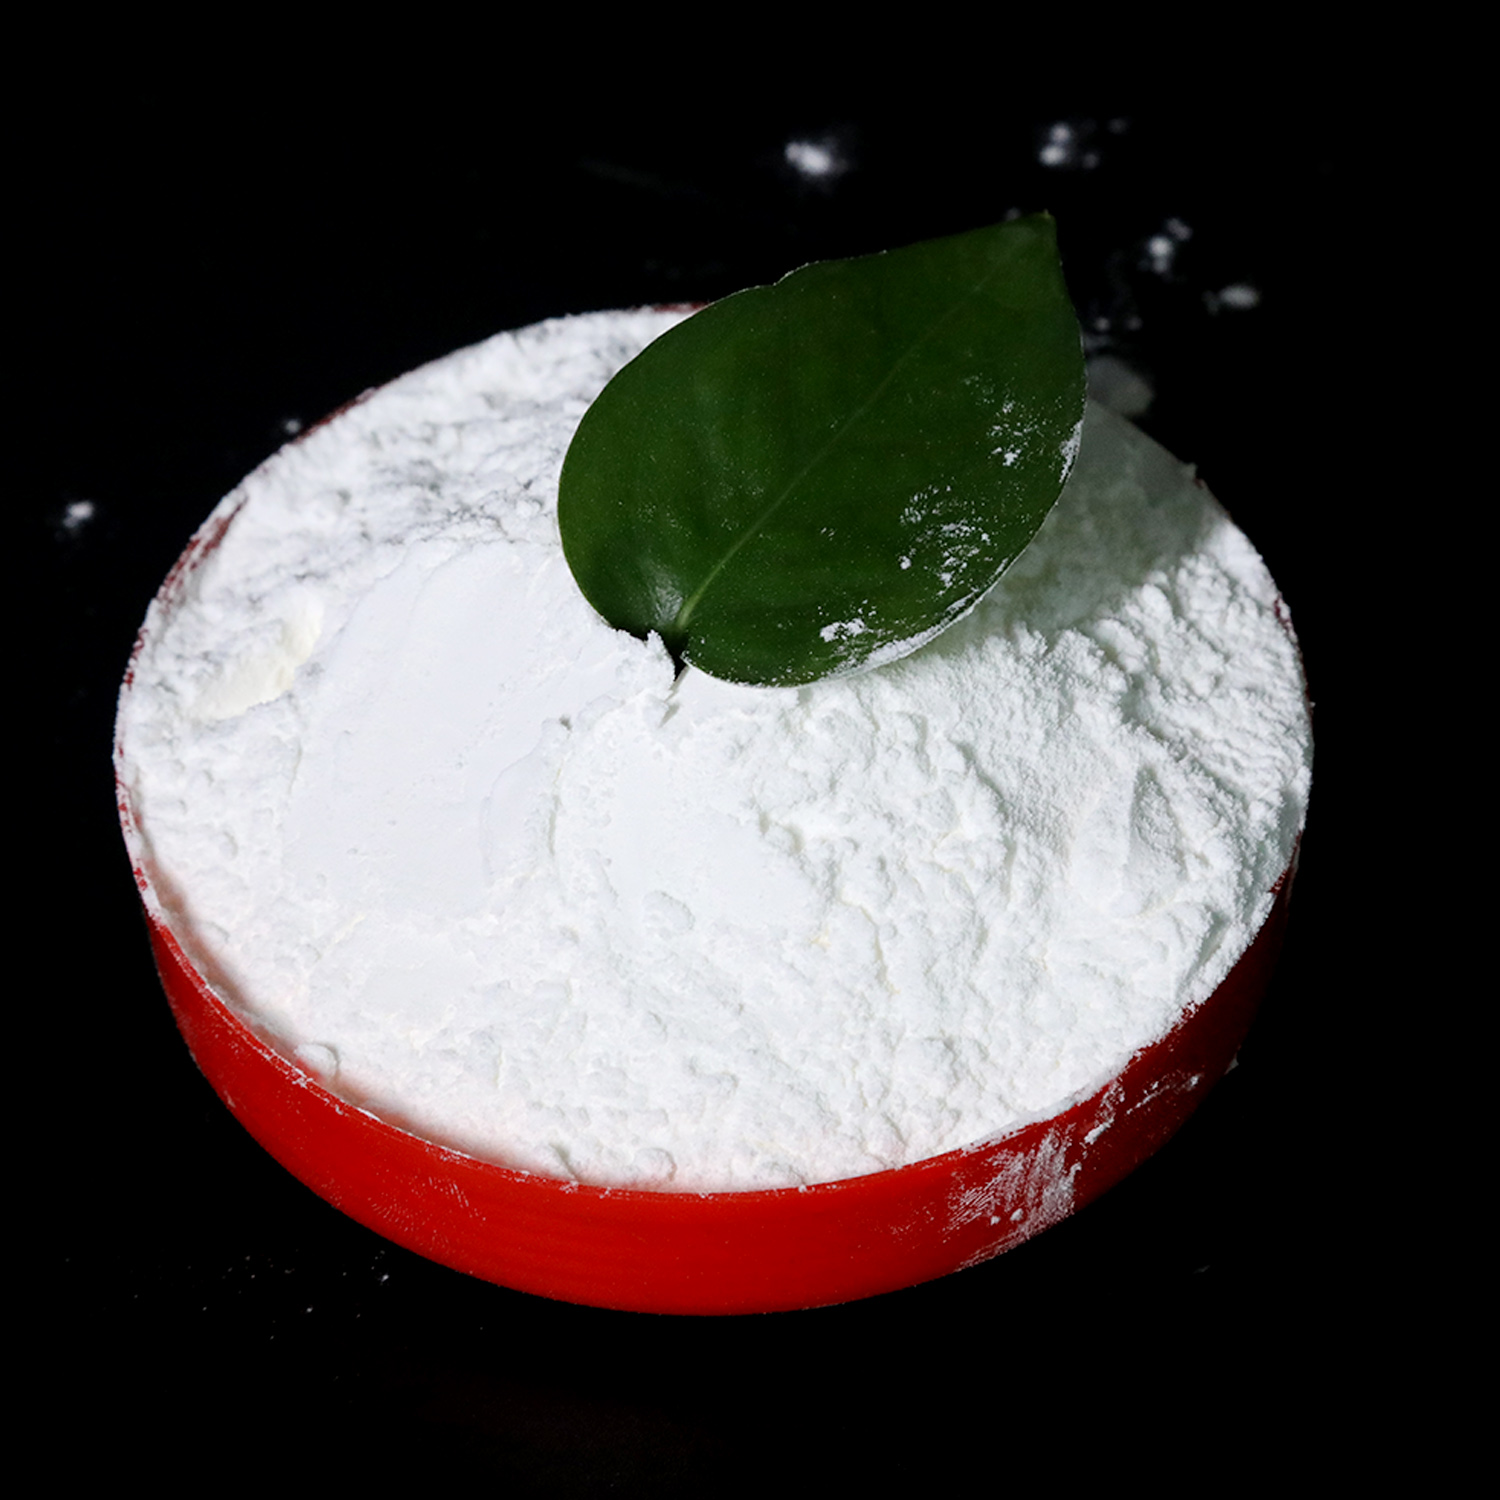 98% Purità Cruda Masculina Enhancement Powders Yohimbine Hydrochloride Riducendu Pressione Sanguigna CasNO.65-19-0